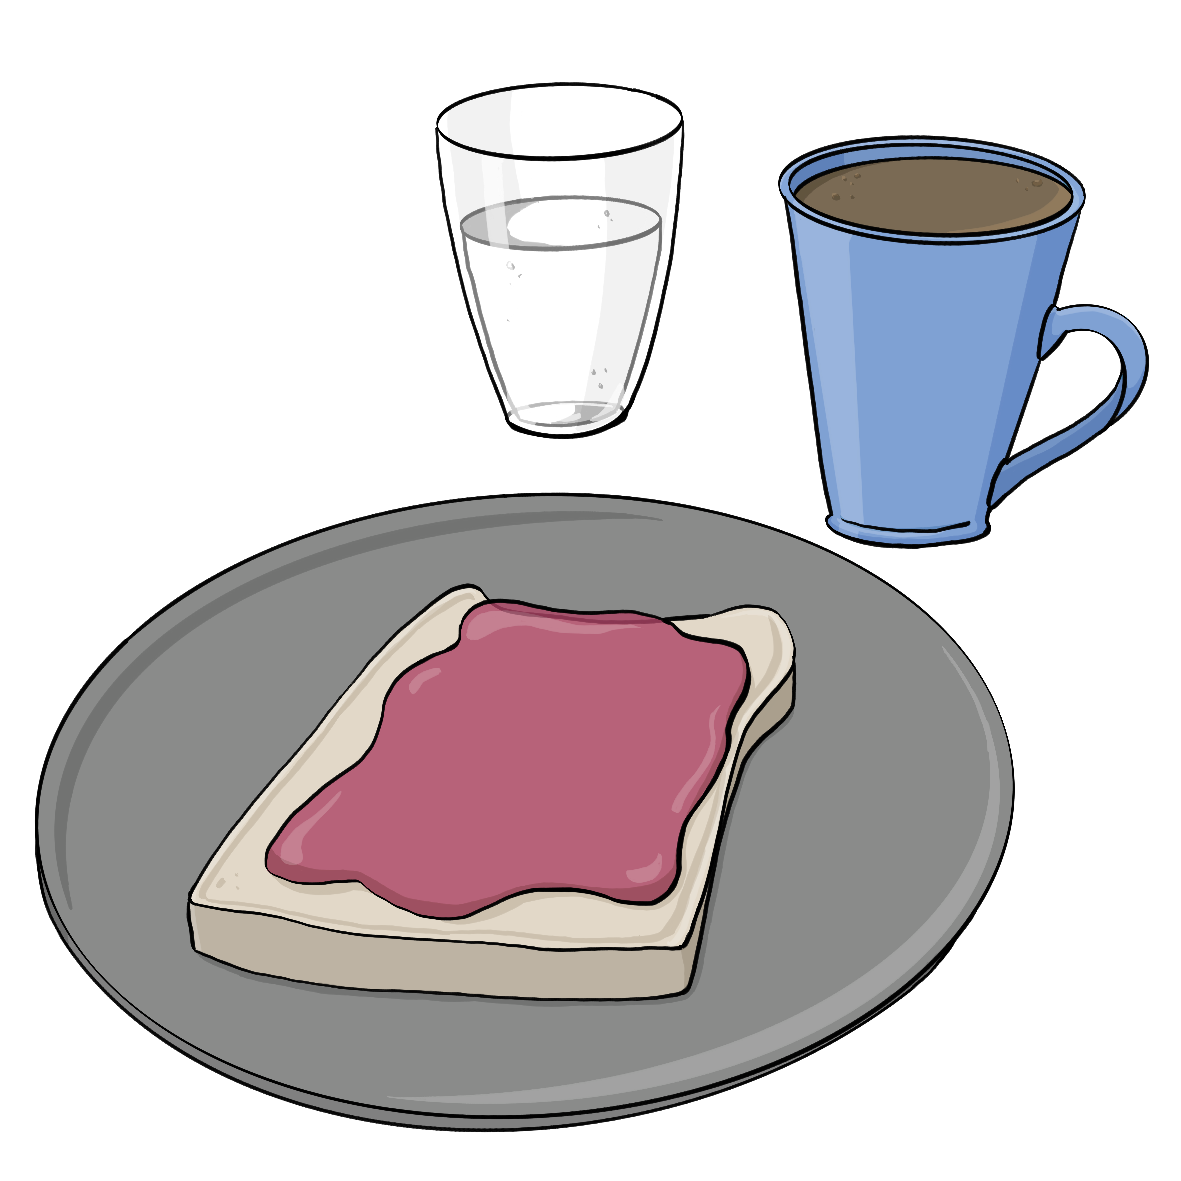 Weißbrot mit Marmelade auf einem Teller, ein Glas mit heller Flüssigkeit und eine Tasse mit brauner Flüssigkeit. 